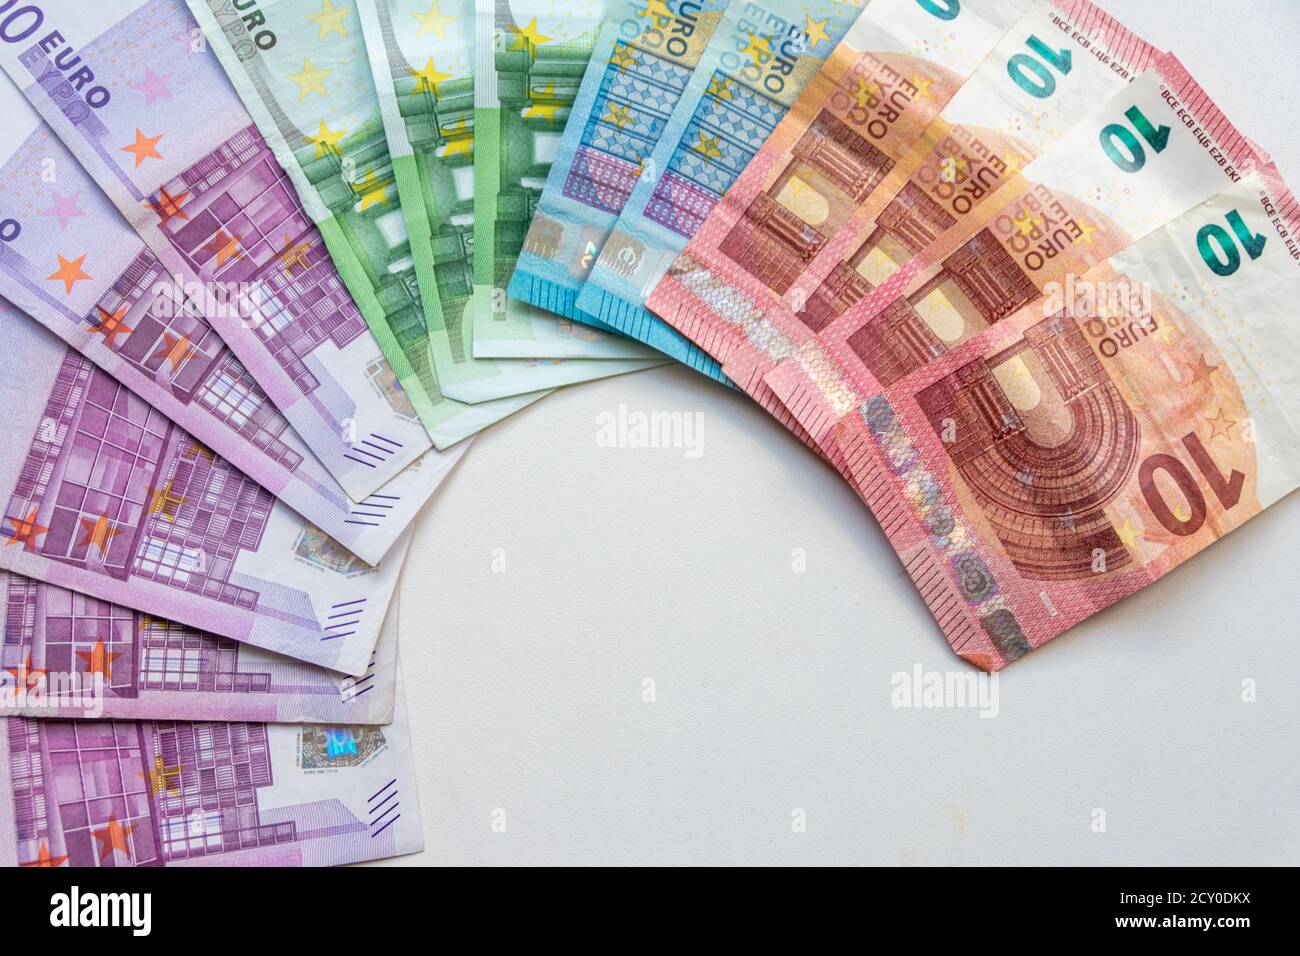 Un montón de billetes de banco europeos para la multitud internacional financiación o transacción financiera para mostrar el comercio internacional y financiero mercado Foto de stock